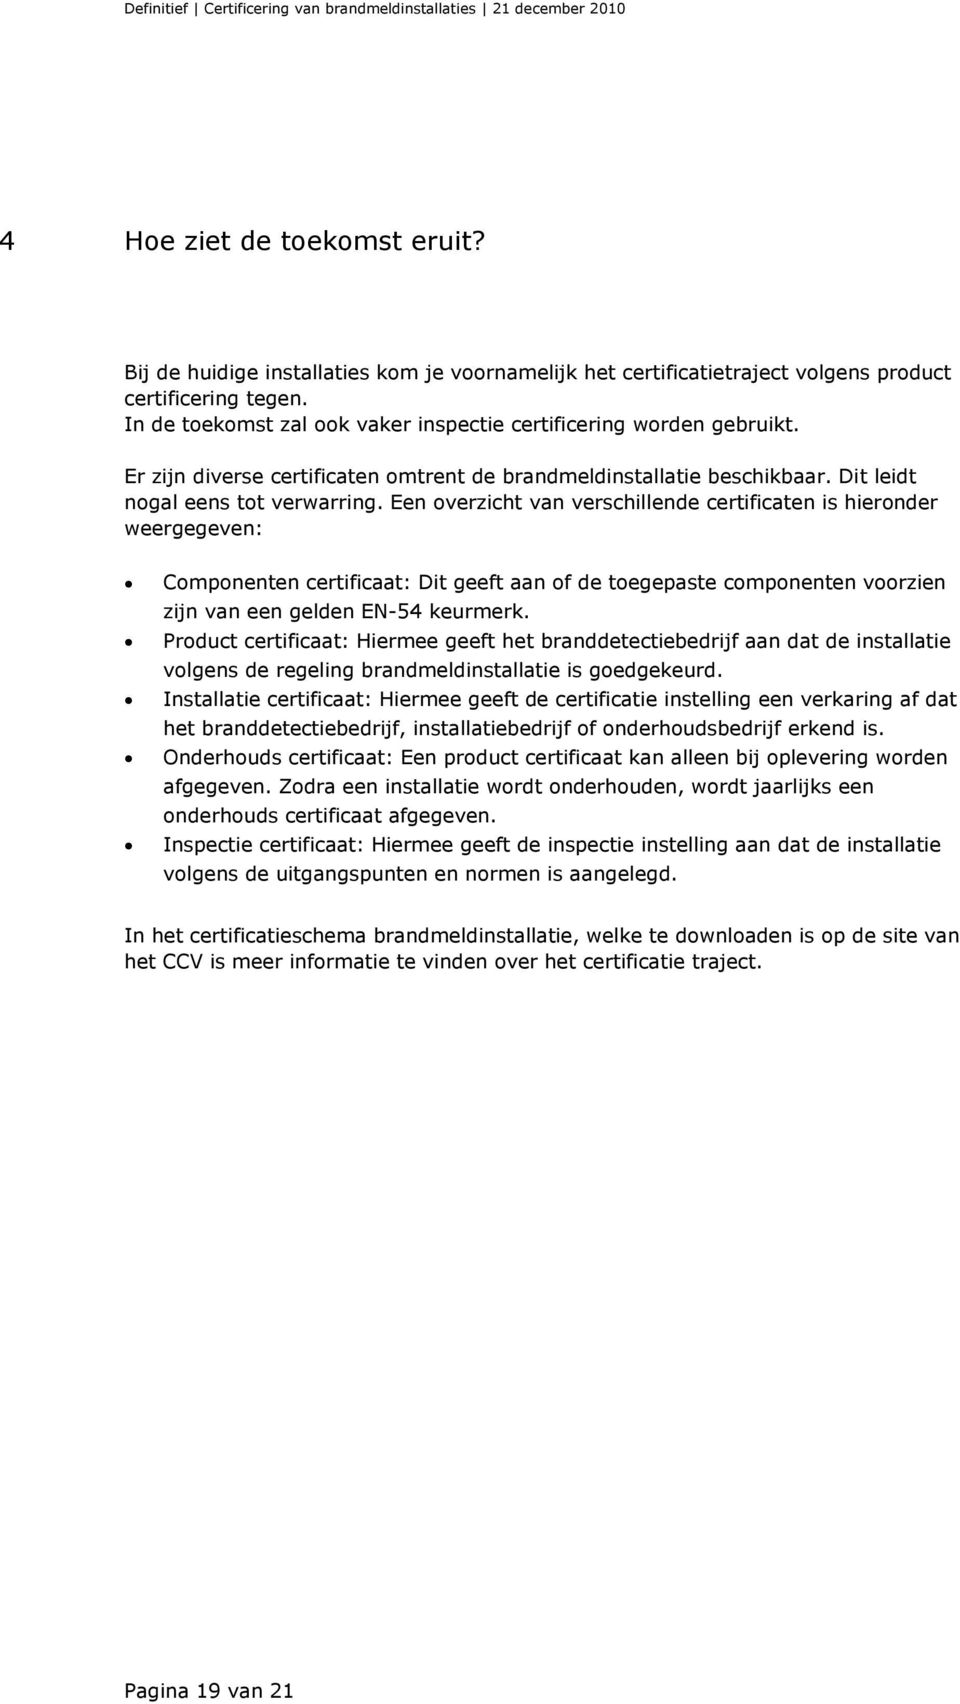 Een overzicht van verschillende certificaten is hieronder weergegeven: Componenten certificaat: Dit geeft aan of de toegepaste componenten voorzien zijn van een gelden EN-54 keurmerk.